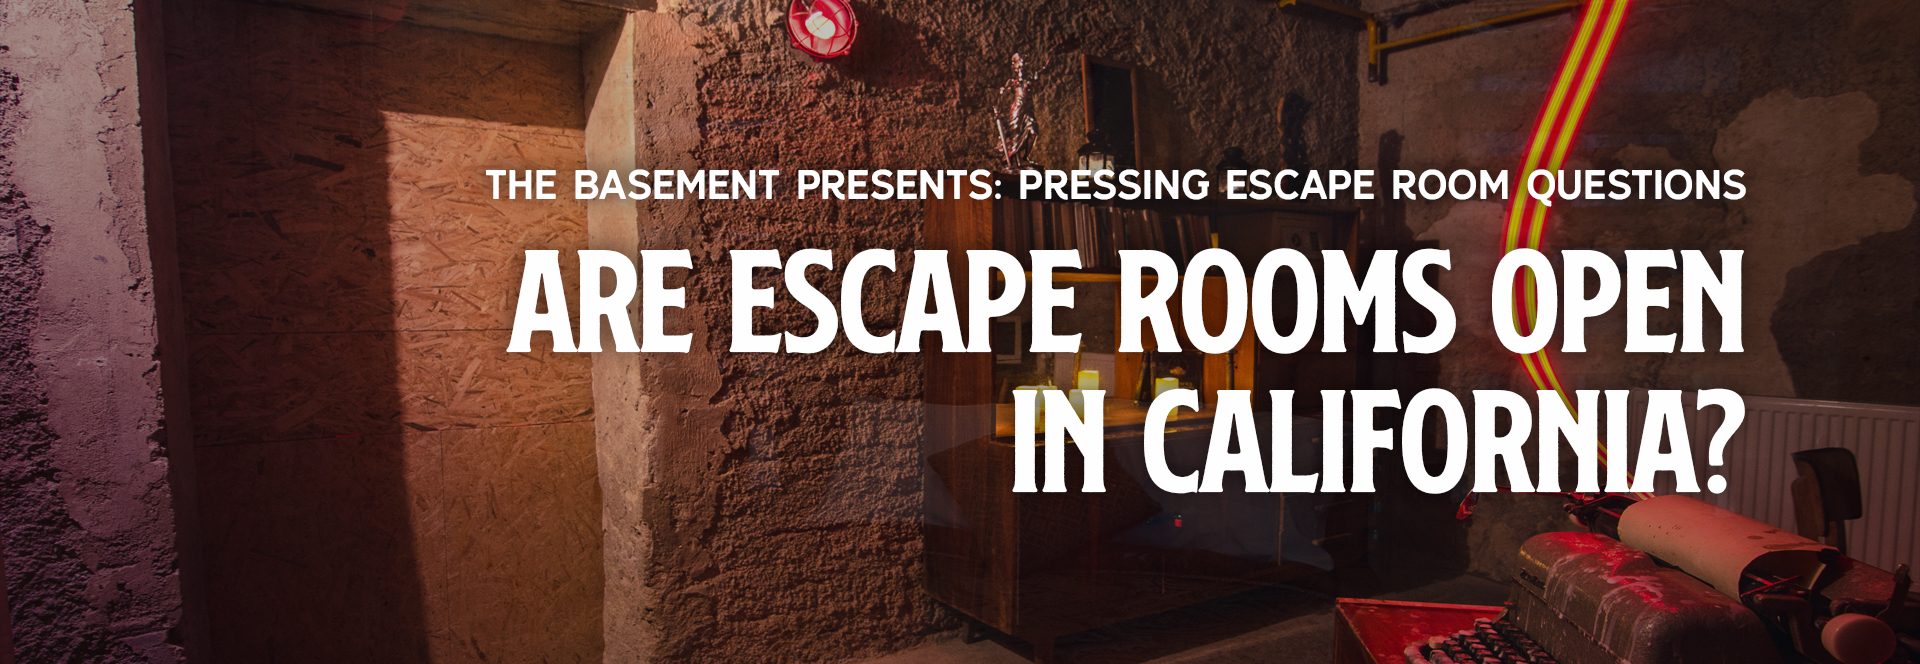 Are Escape Rooms Open in California